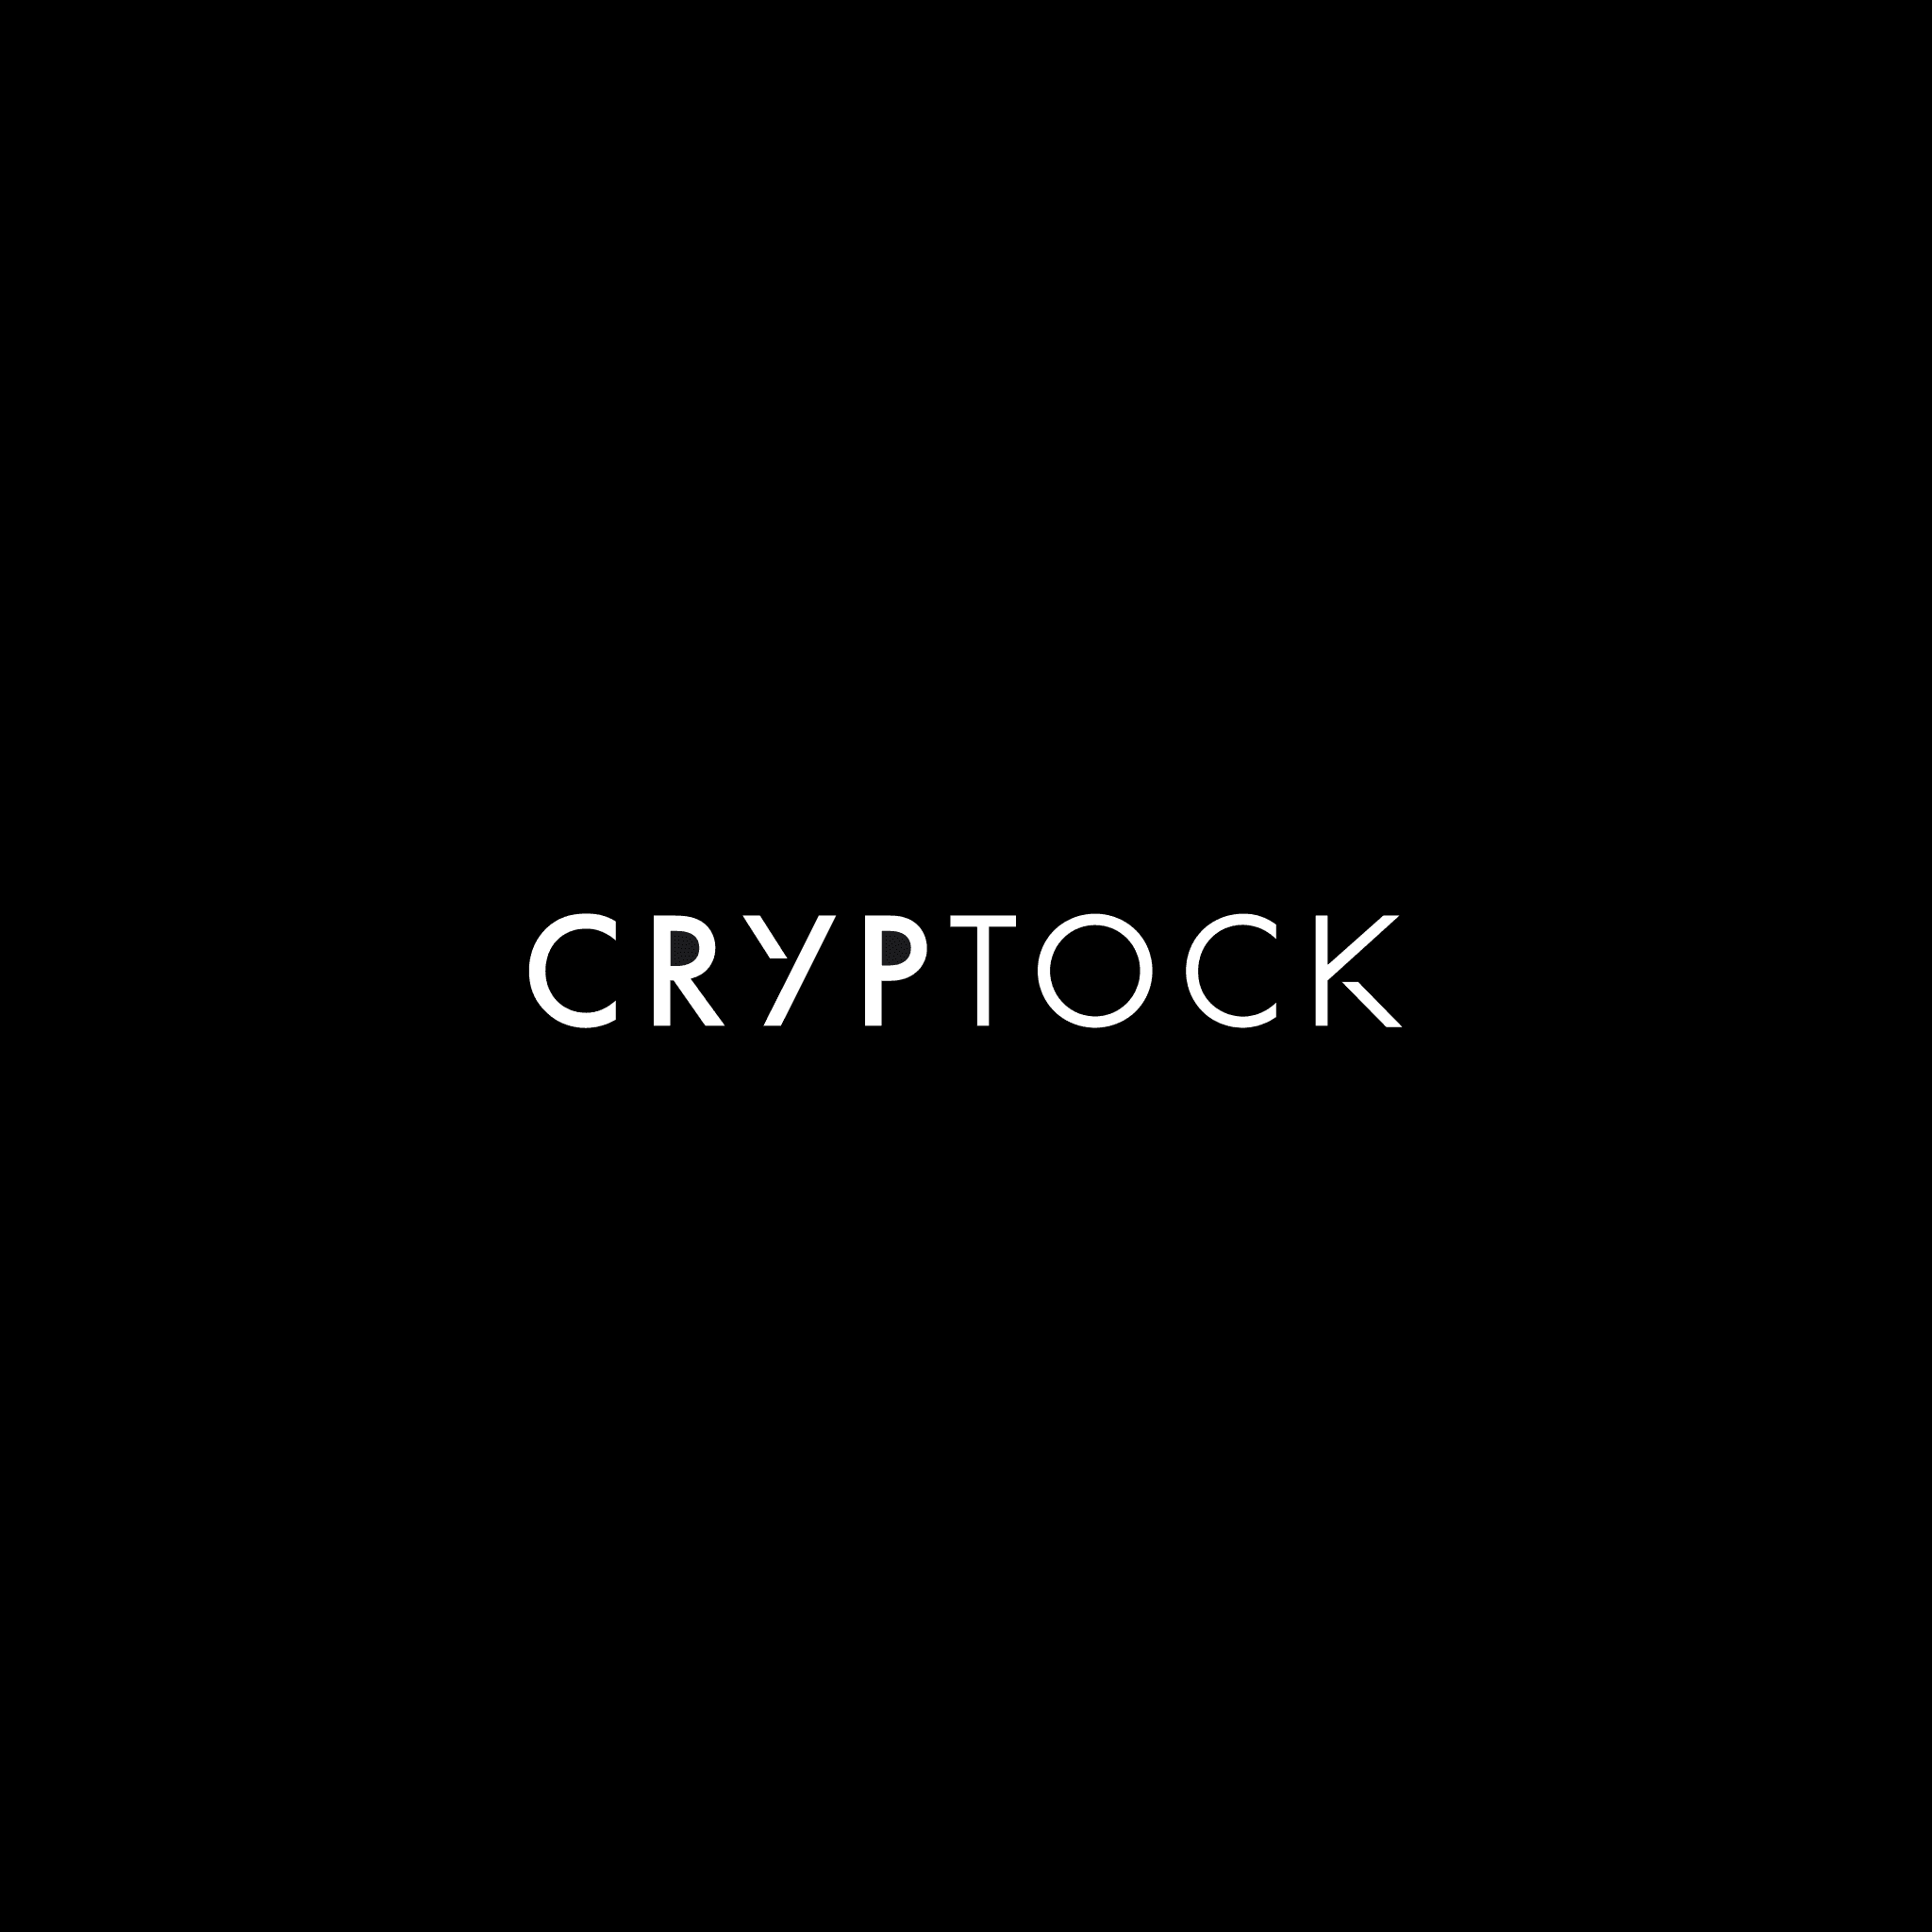 Cryptock_The_Society